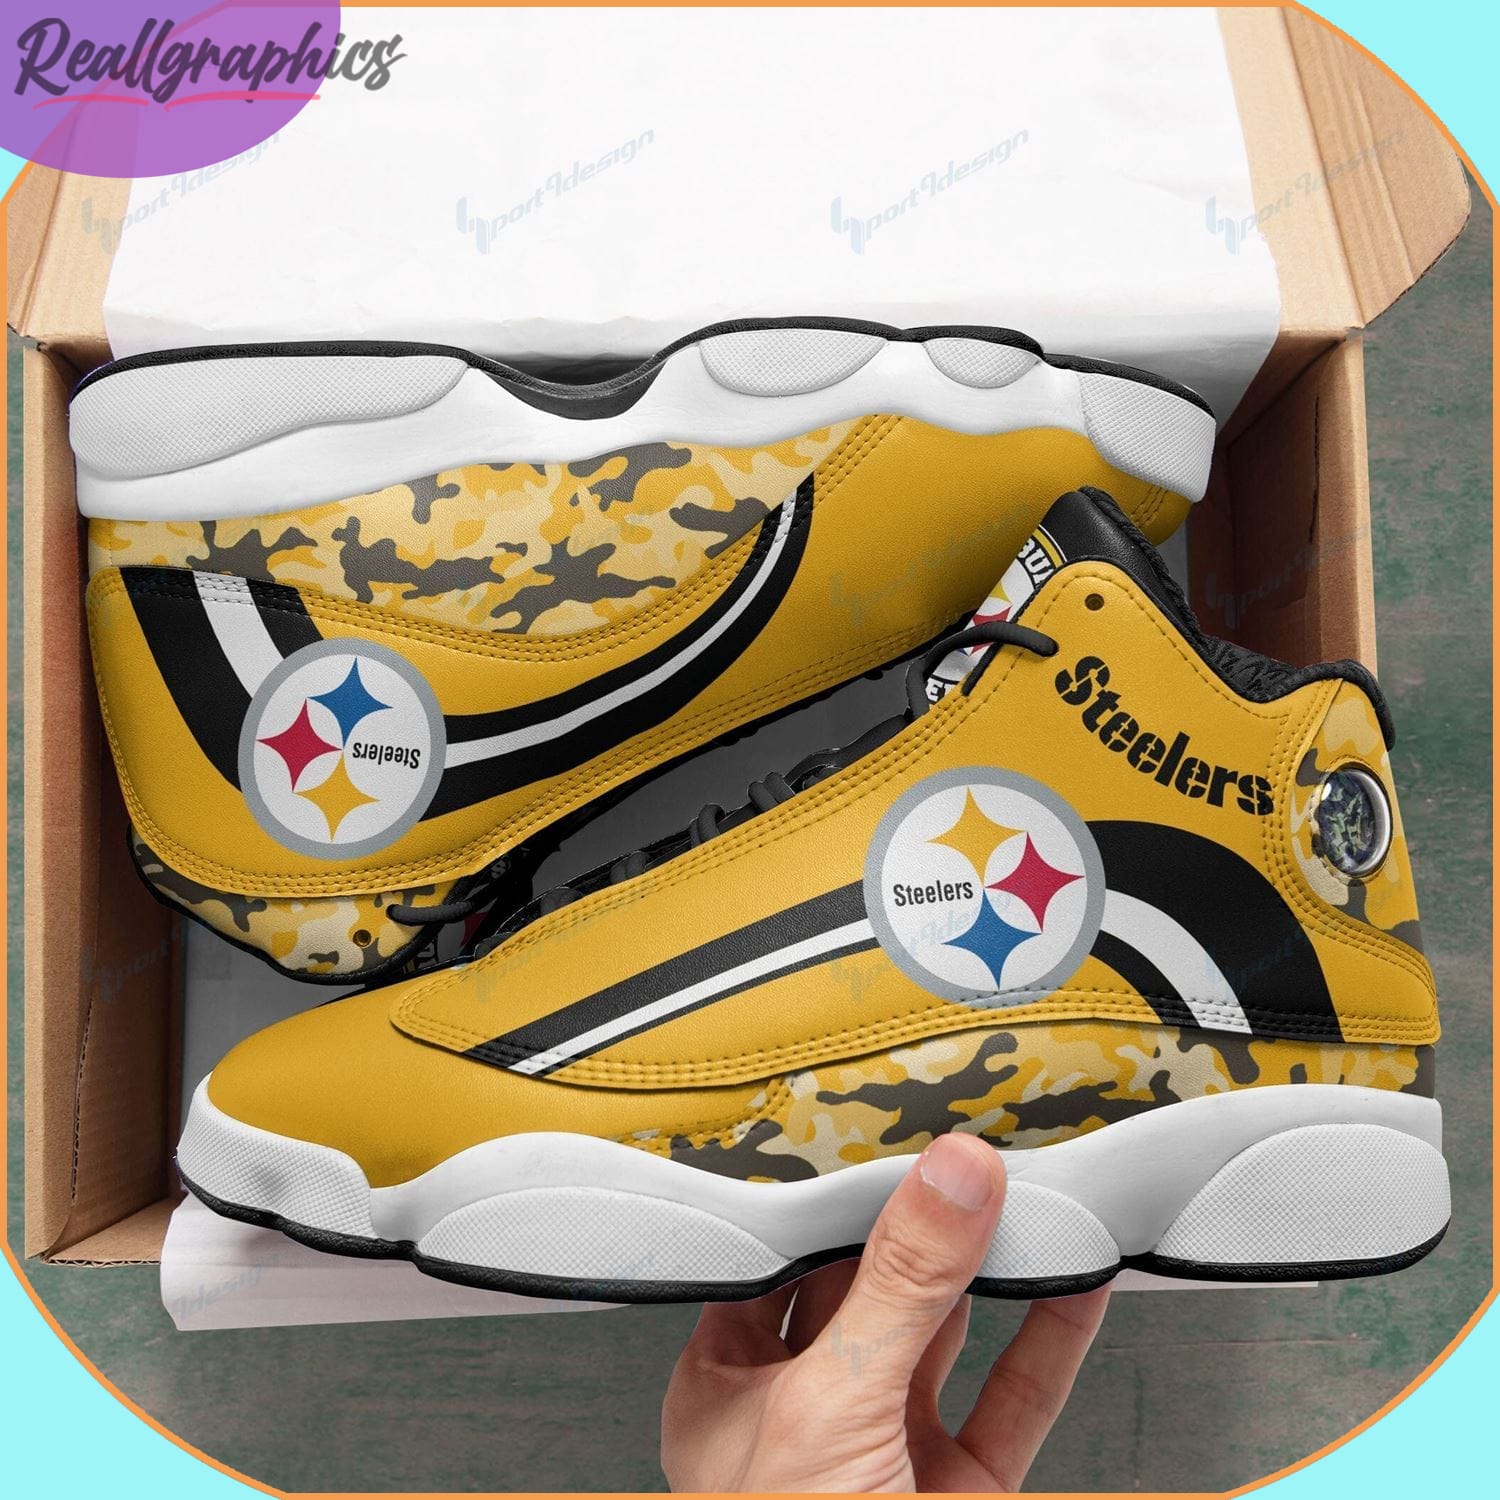 Pittsburgh Steelers Air Jordan 13 Sneaker, Custom Steelers Gear -  Reallgraphics